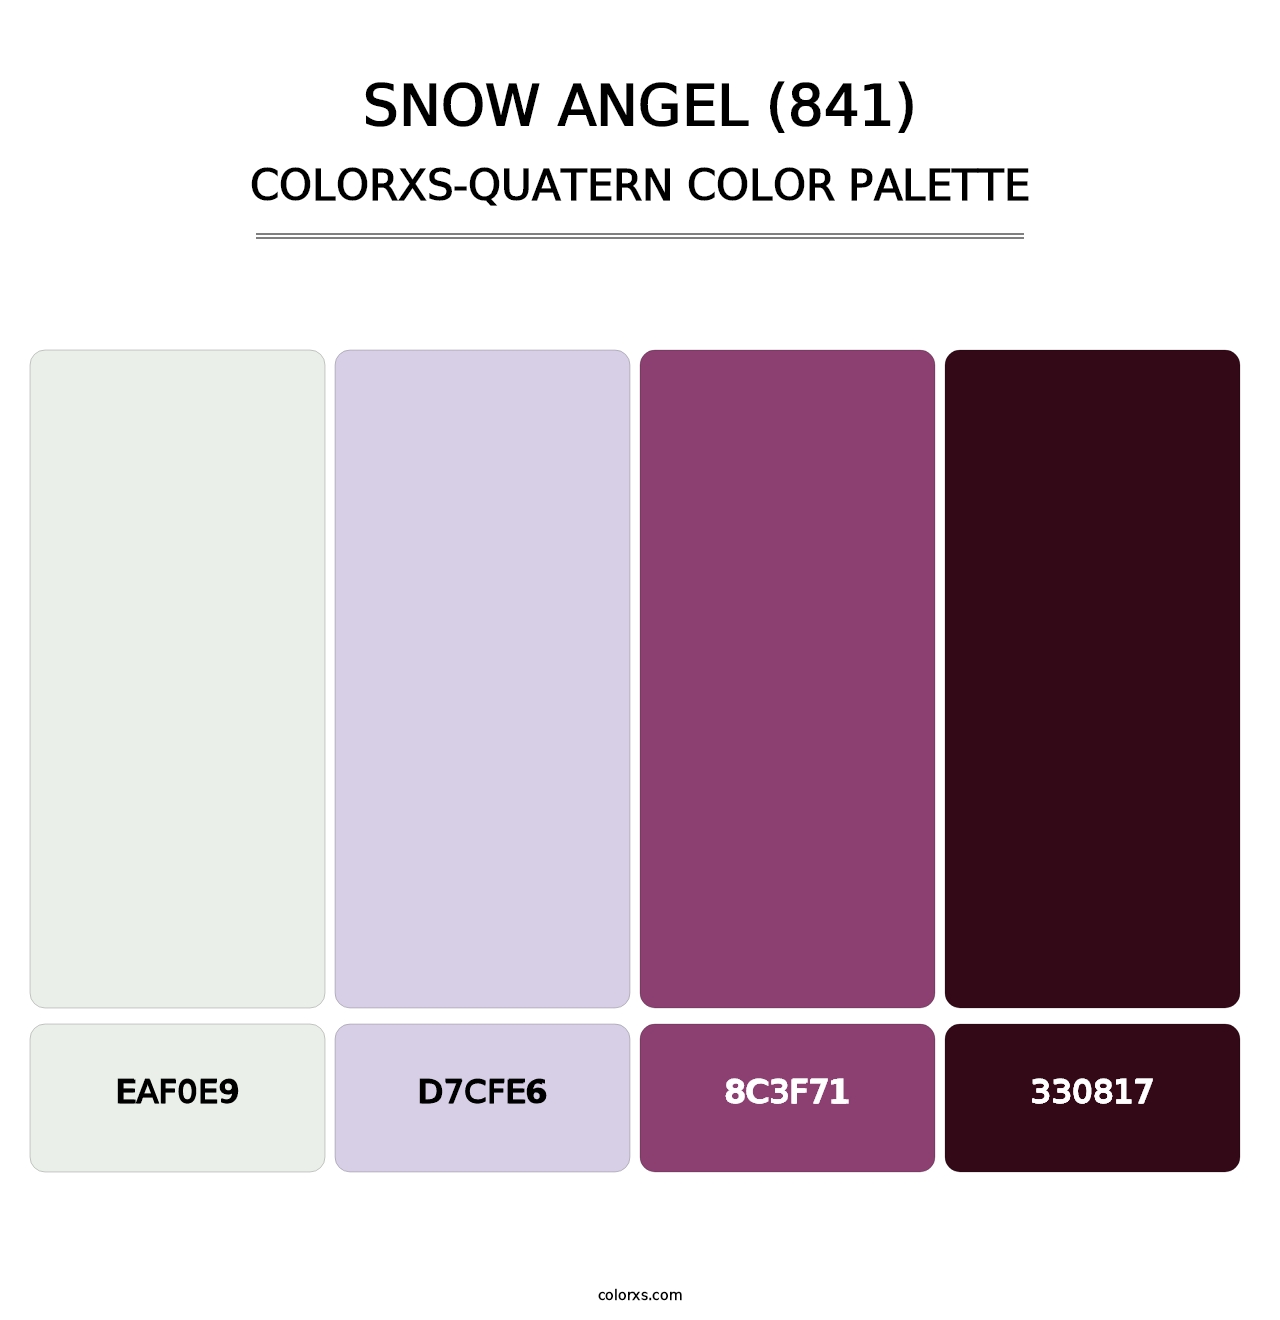 Snow Angel (841) - Colorxs Quatern Palette